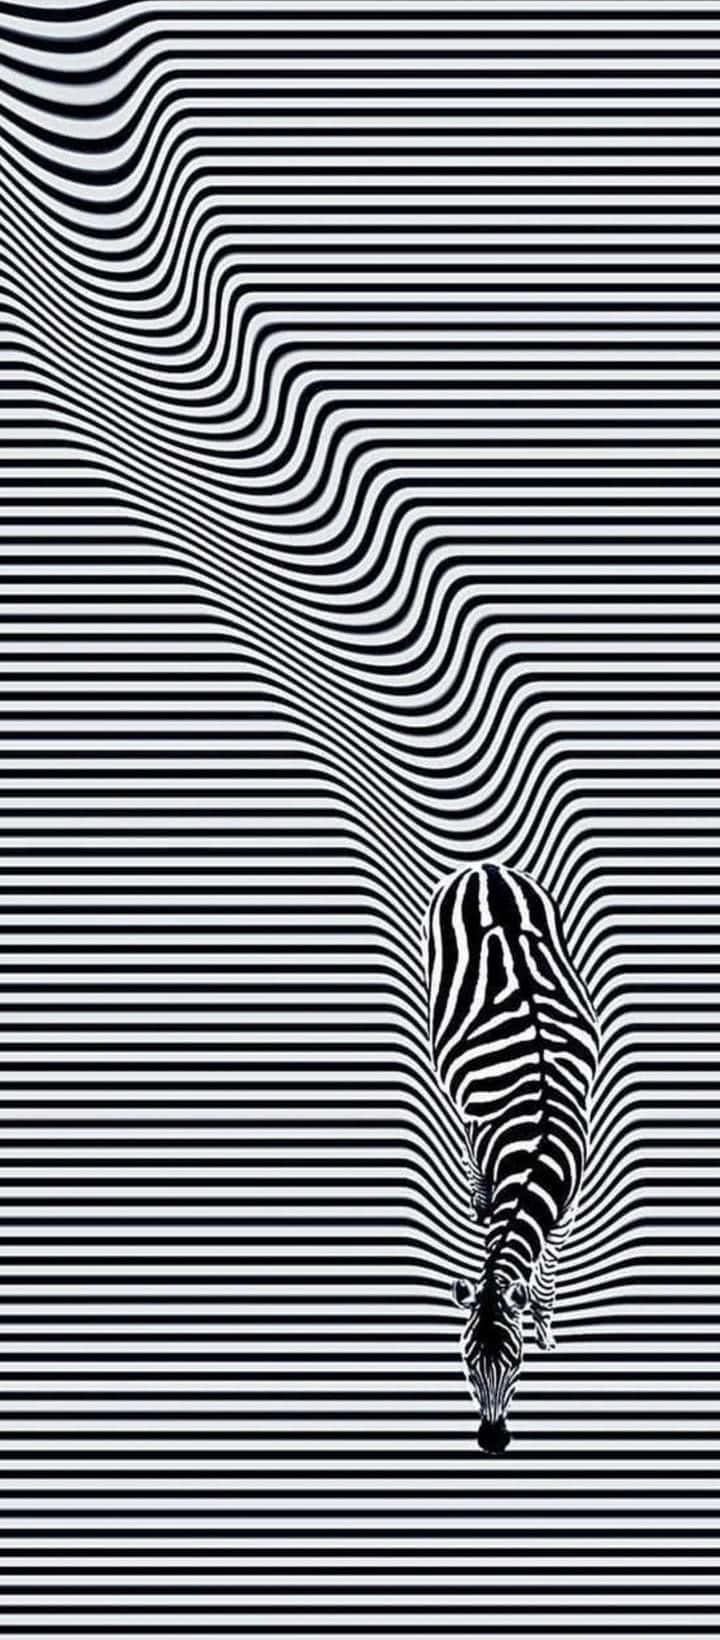 Zebra Optical Illusion Picture 720 x 1640 Picture